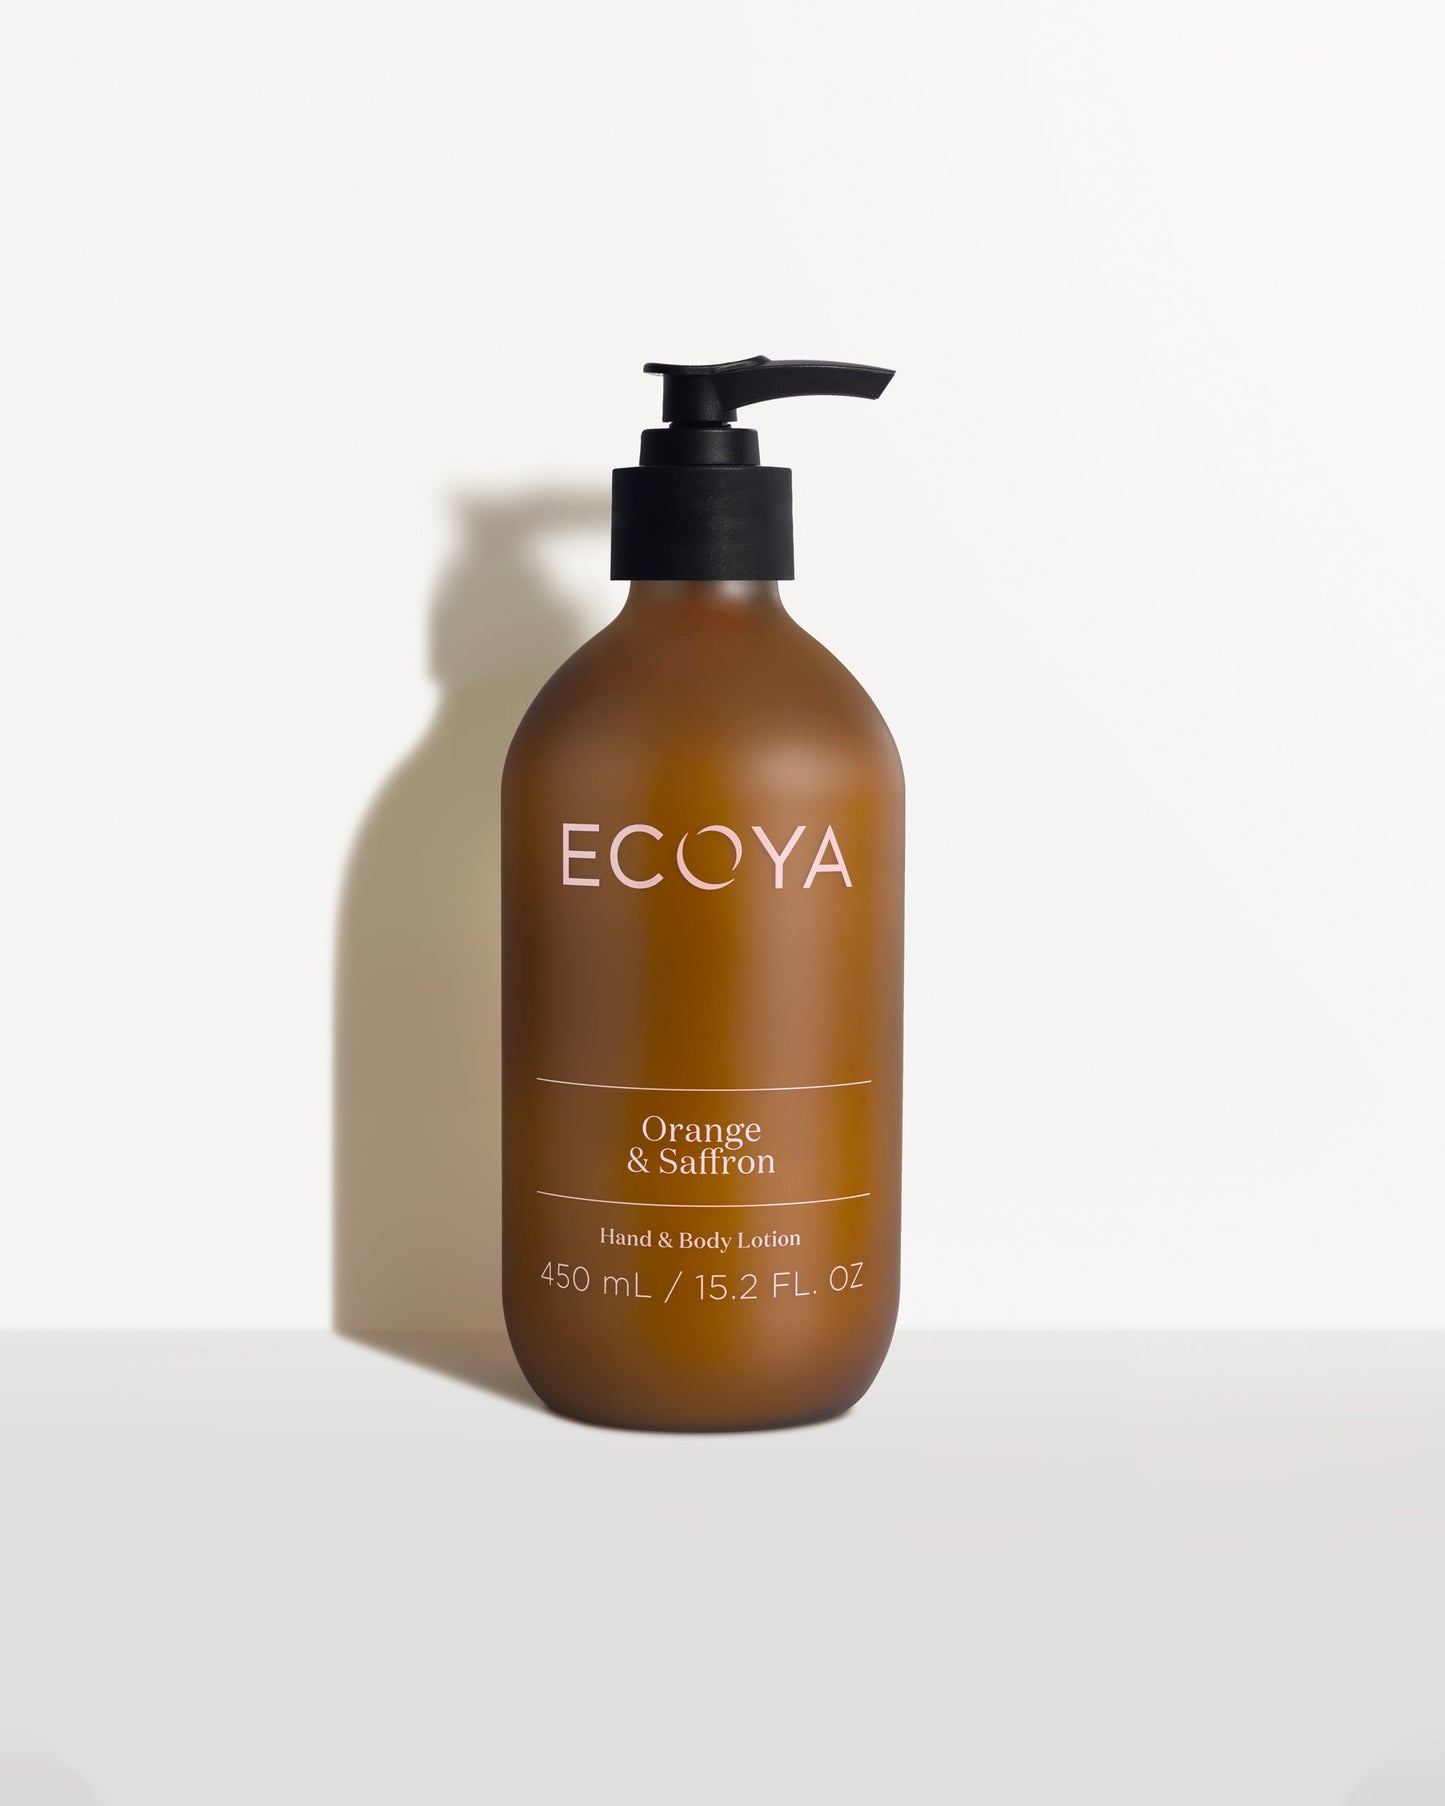 Ecoya fragranced body lotion